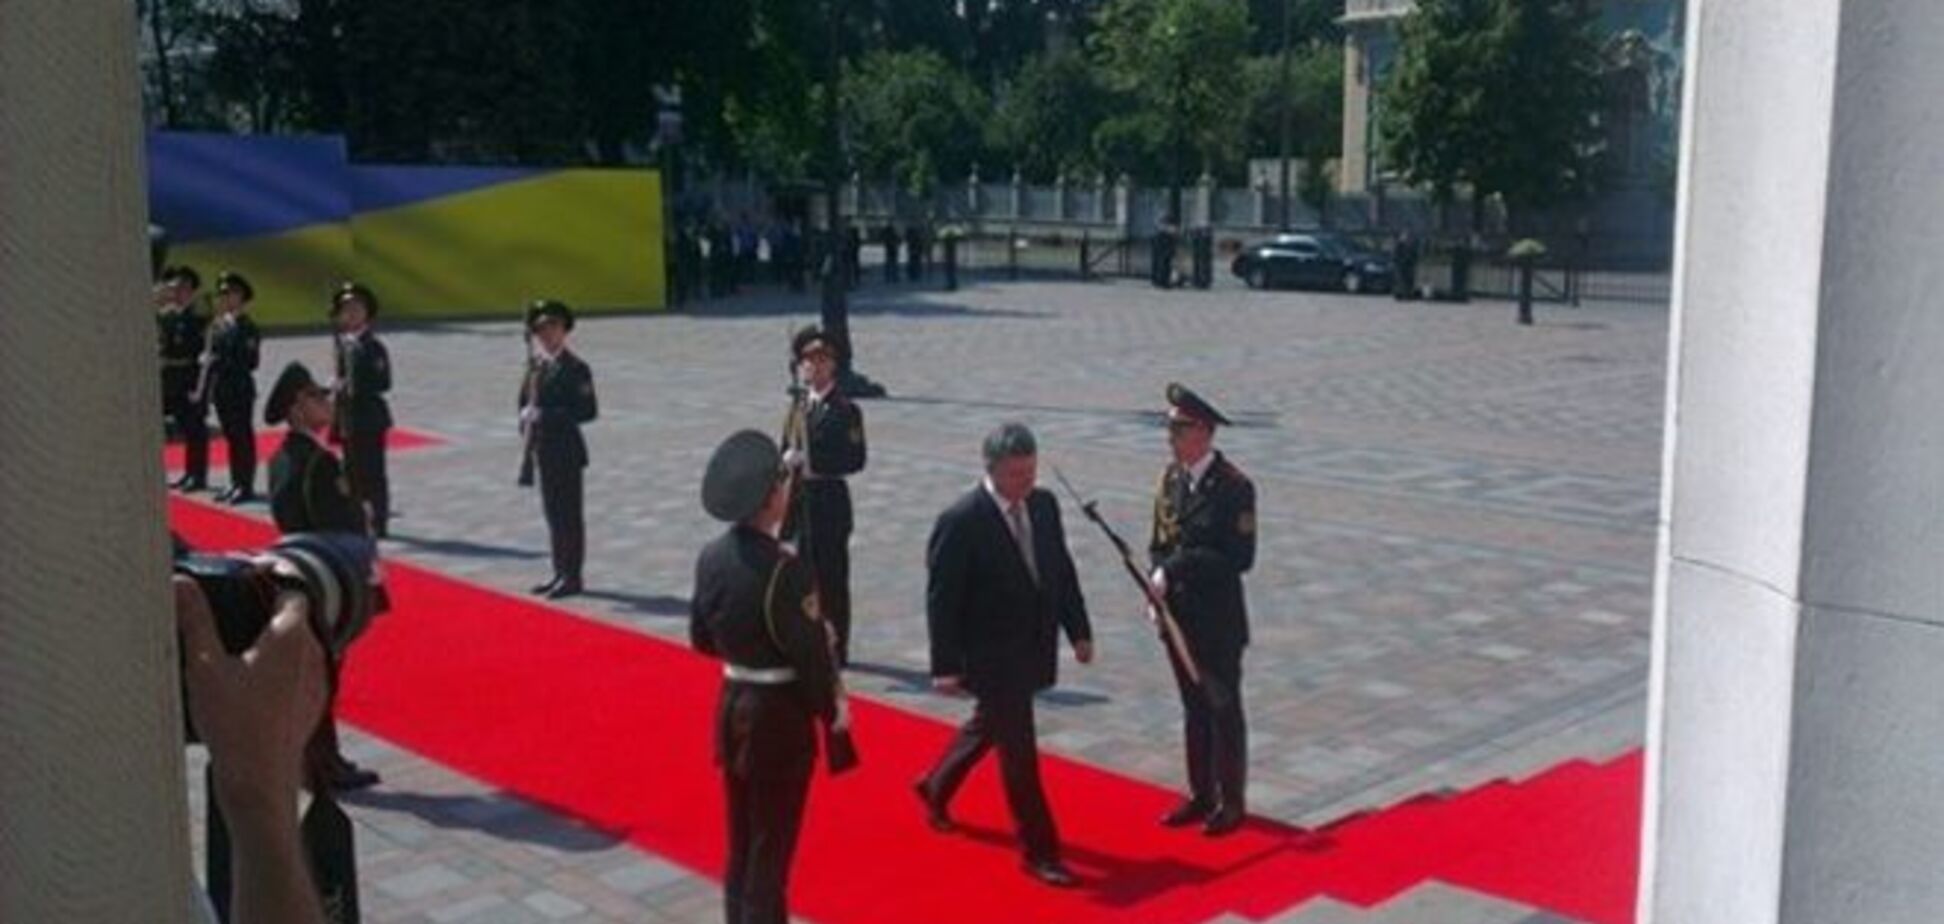   Солдат почетного караула потерял сознание на инаугурации Порошенко  